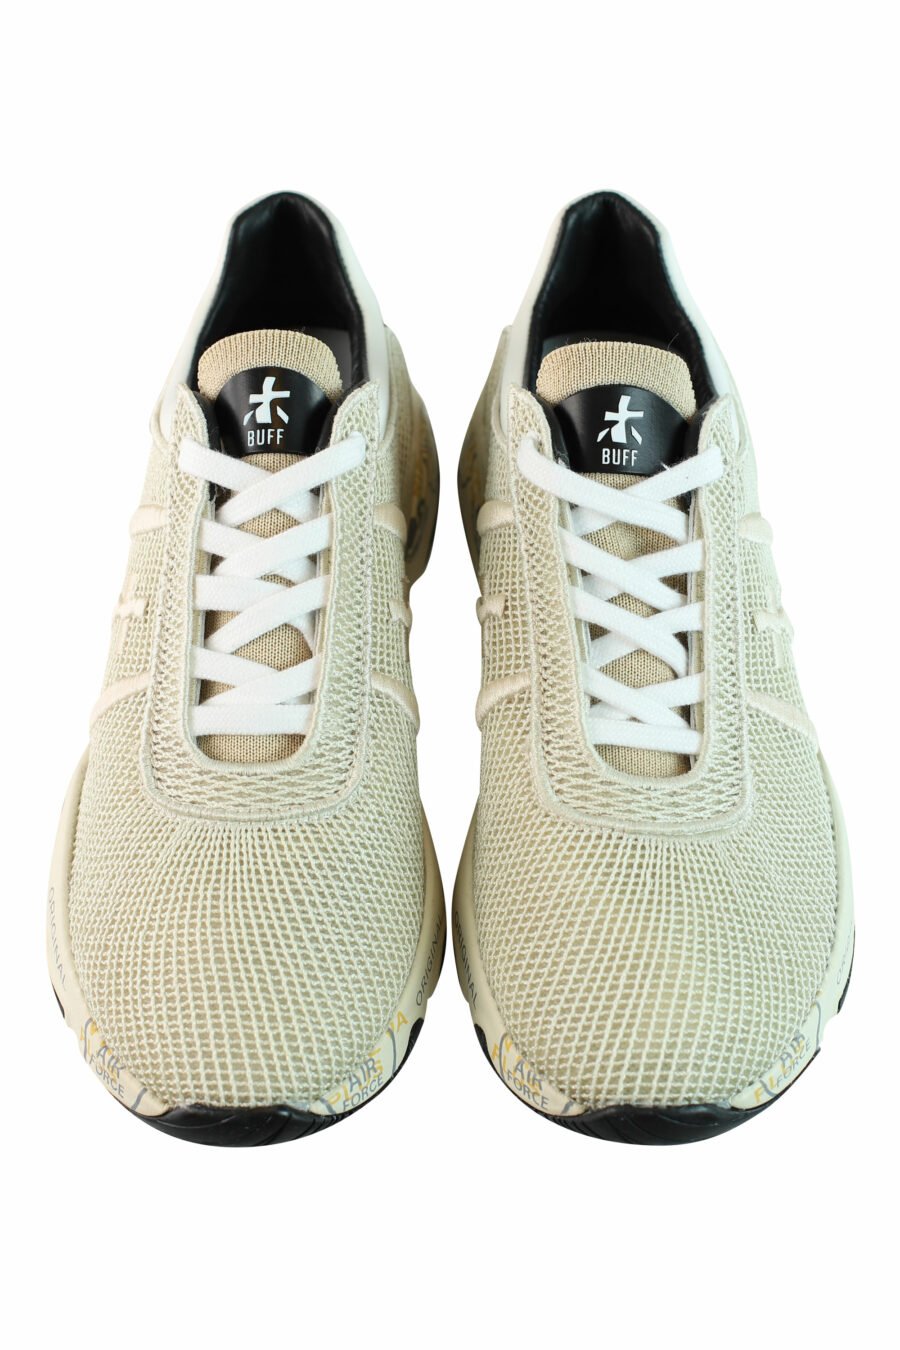 Zapatillas beige y negro transpirables "buff 5844" - IMG 0870